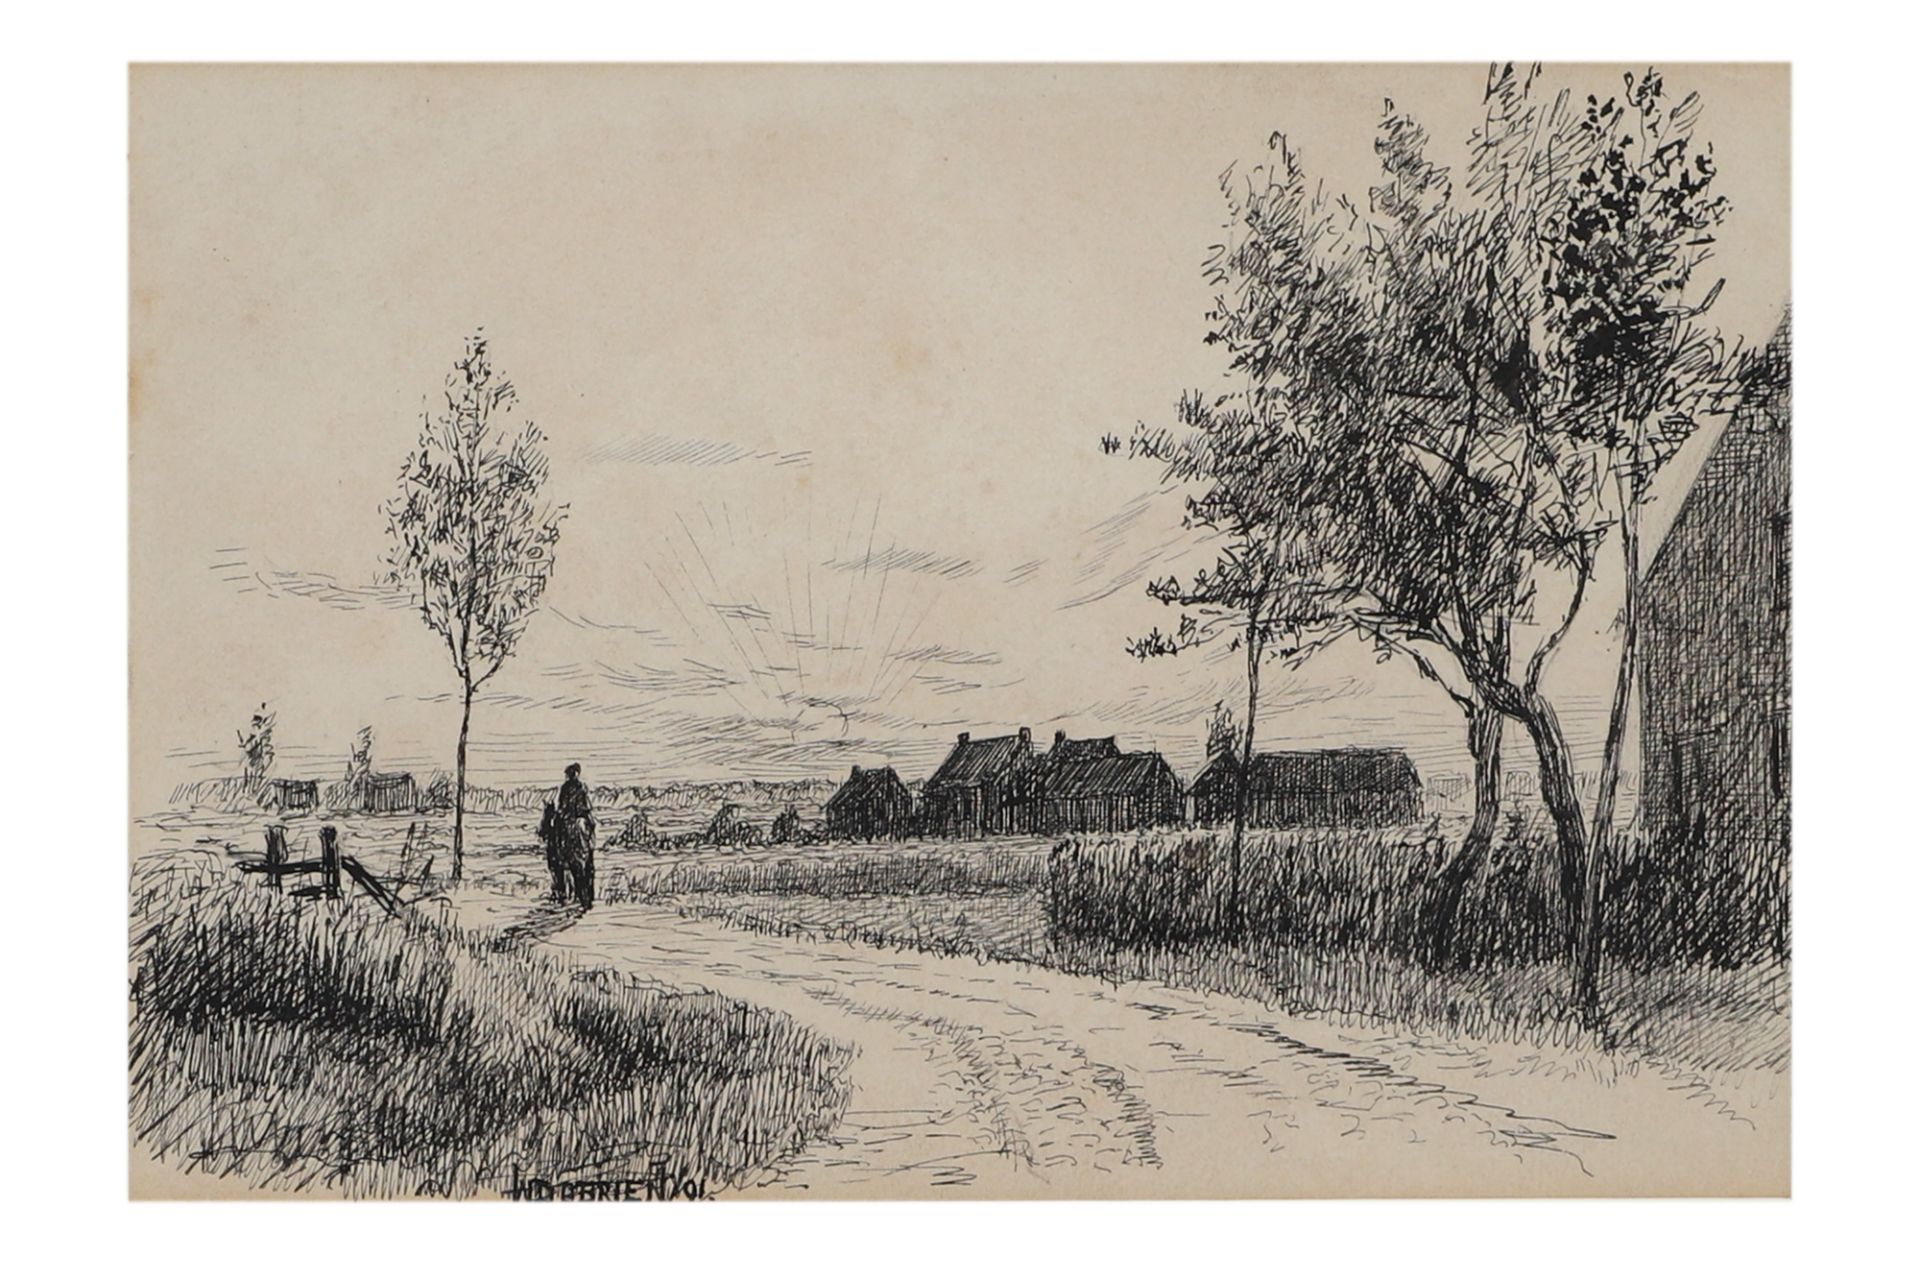 DERMOT O'BRIEN, P.R.H.A (Irl 1865 - 1945) "Riding into sunset near Antwerp", pen & ink, ca 5 x 7.